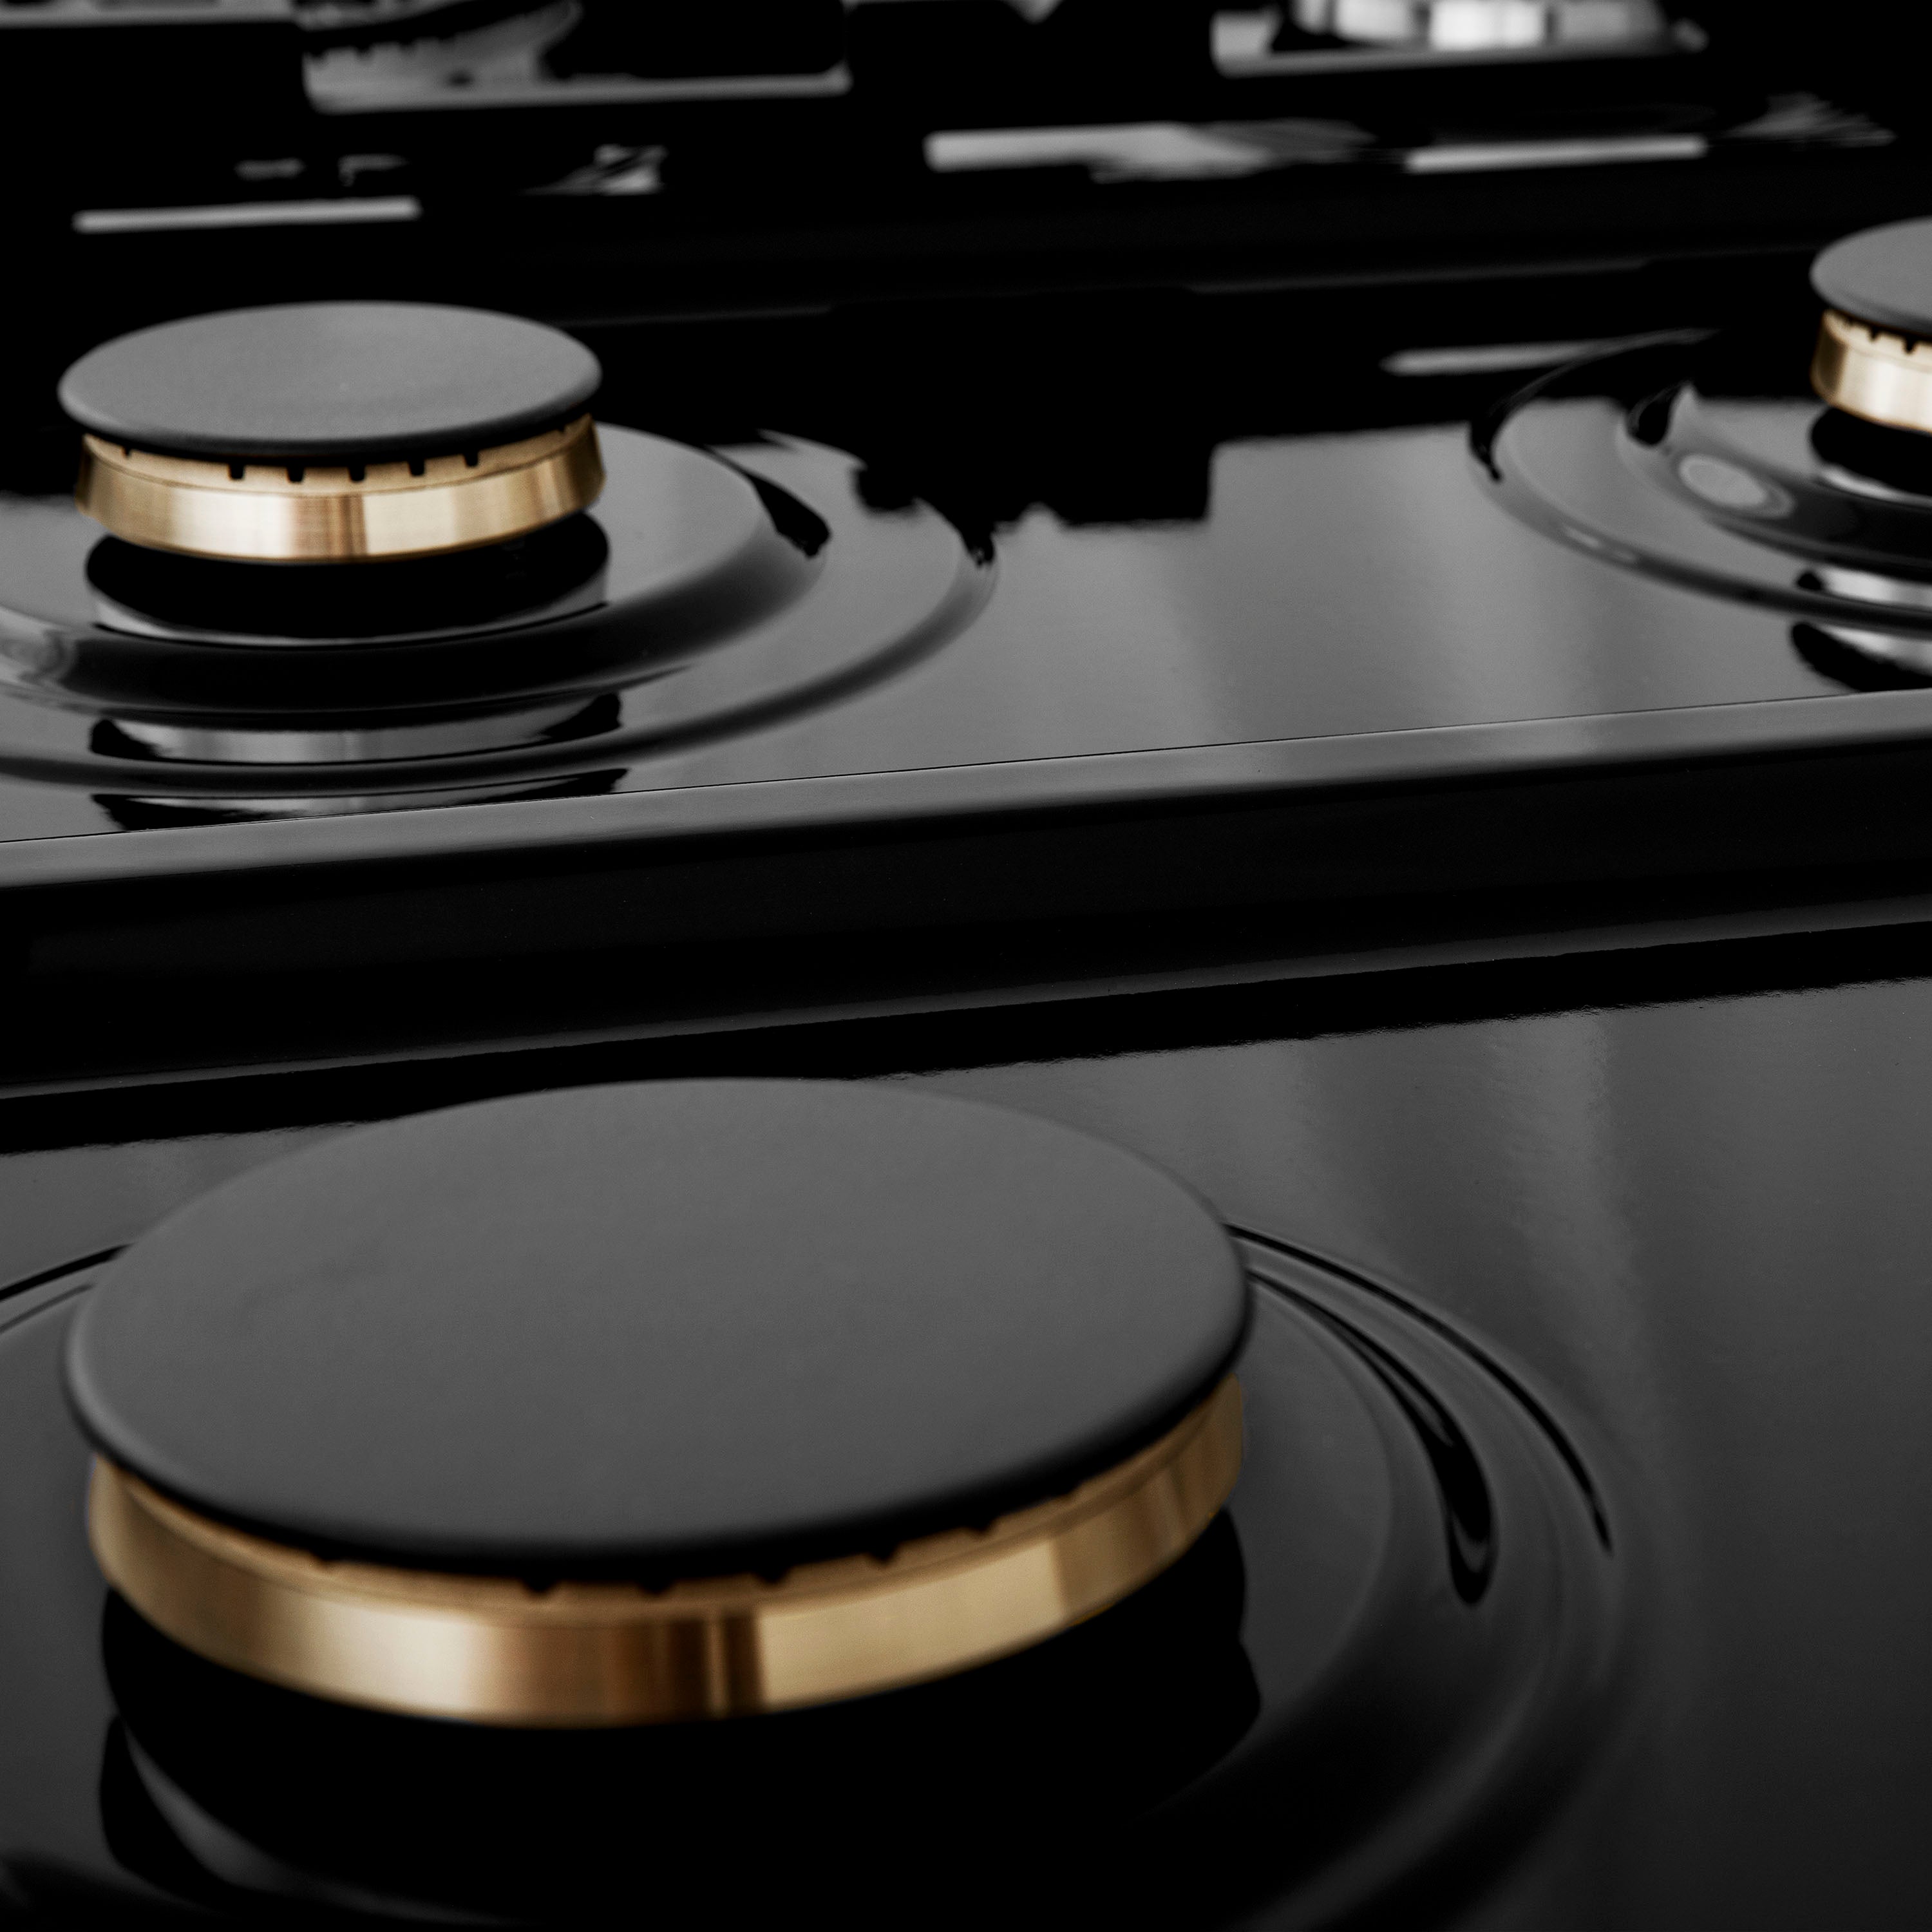 ZLINE brass burners on black porcelain cooktop with no grates.